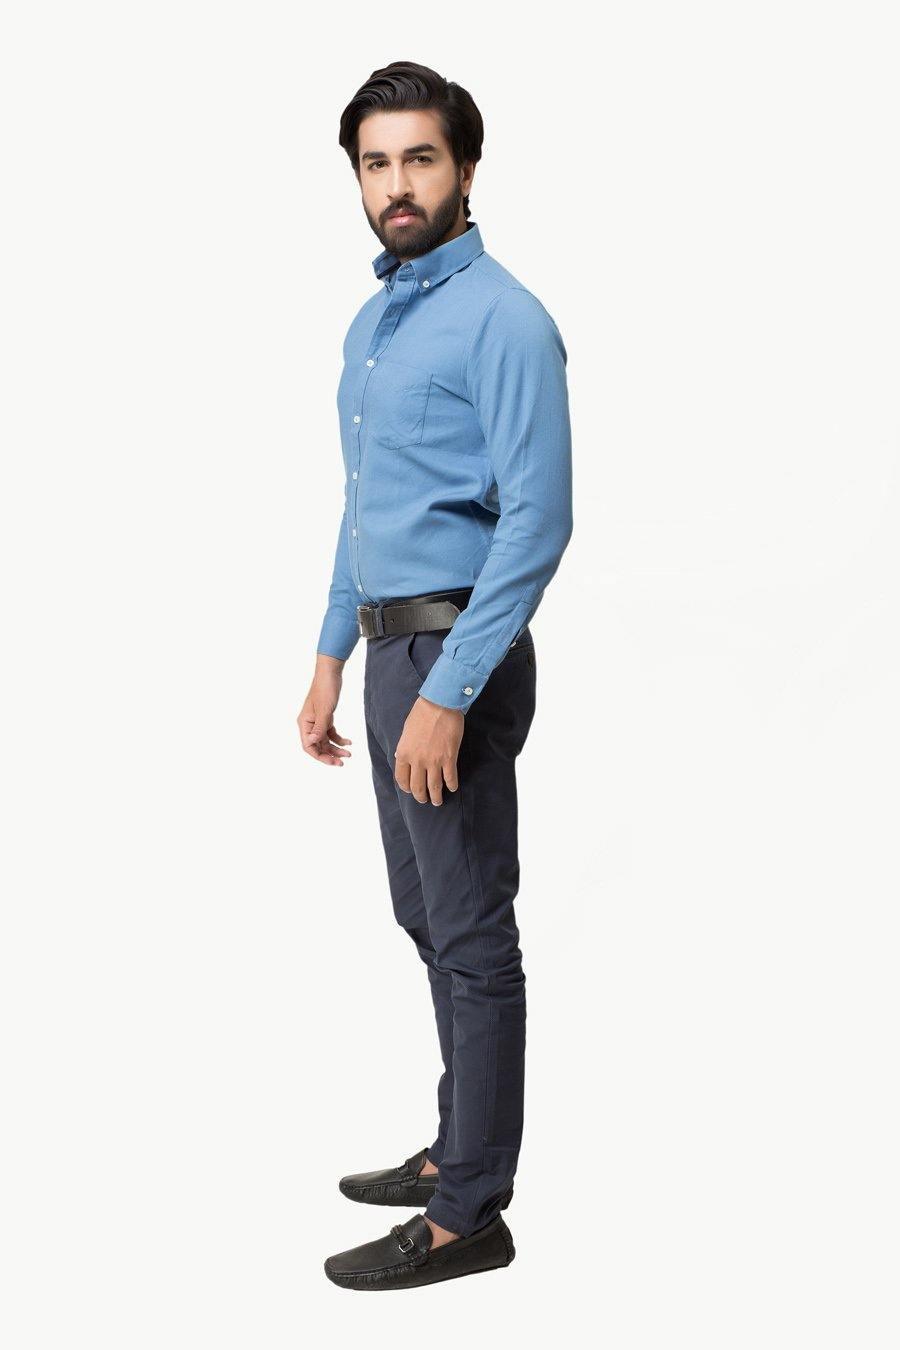 Smart Shirt Blue Grey at Charcoal Clothing